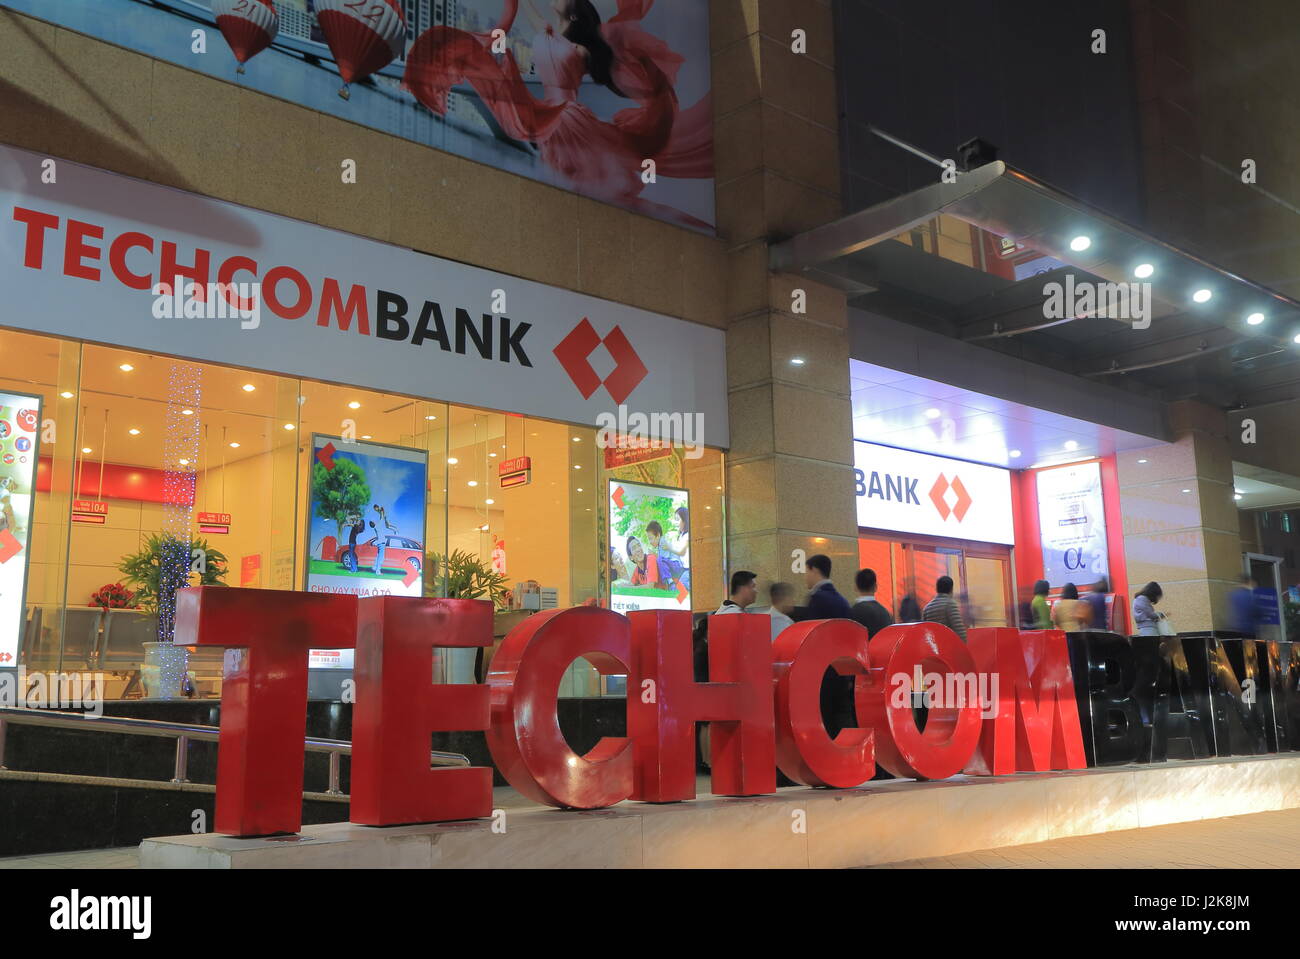 TechcomBank. TechcomBank is a Vietnamese financial institution. Stock Photo